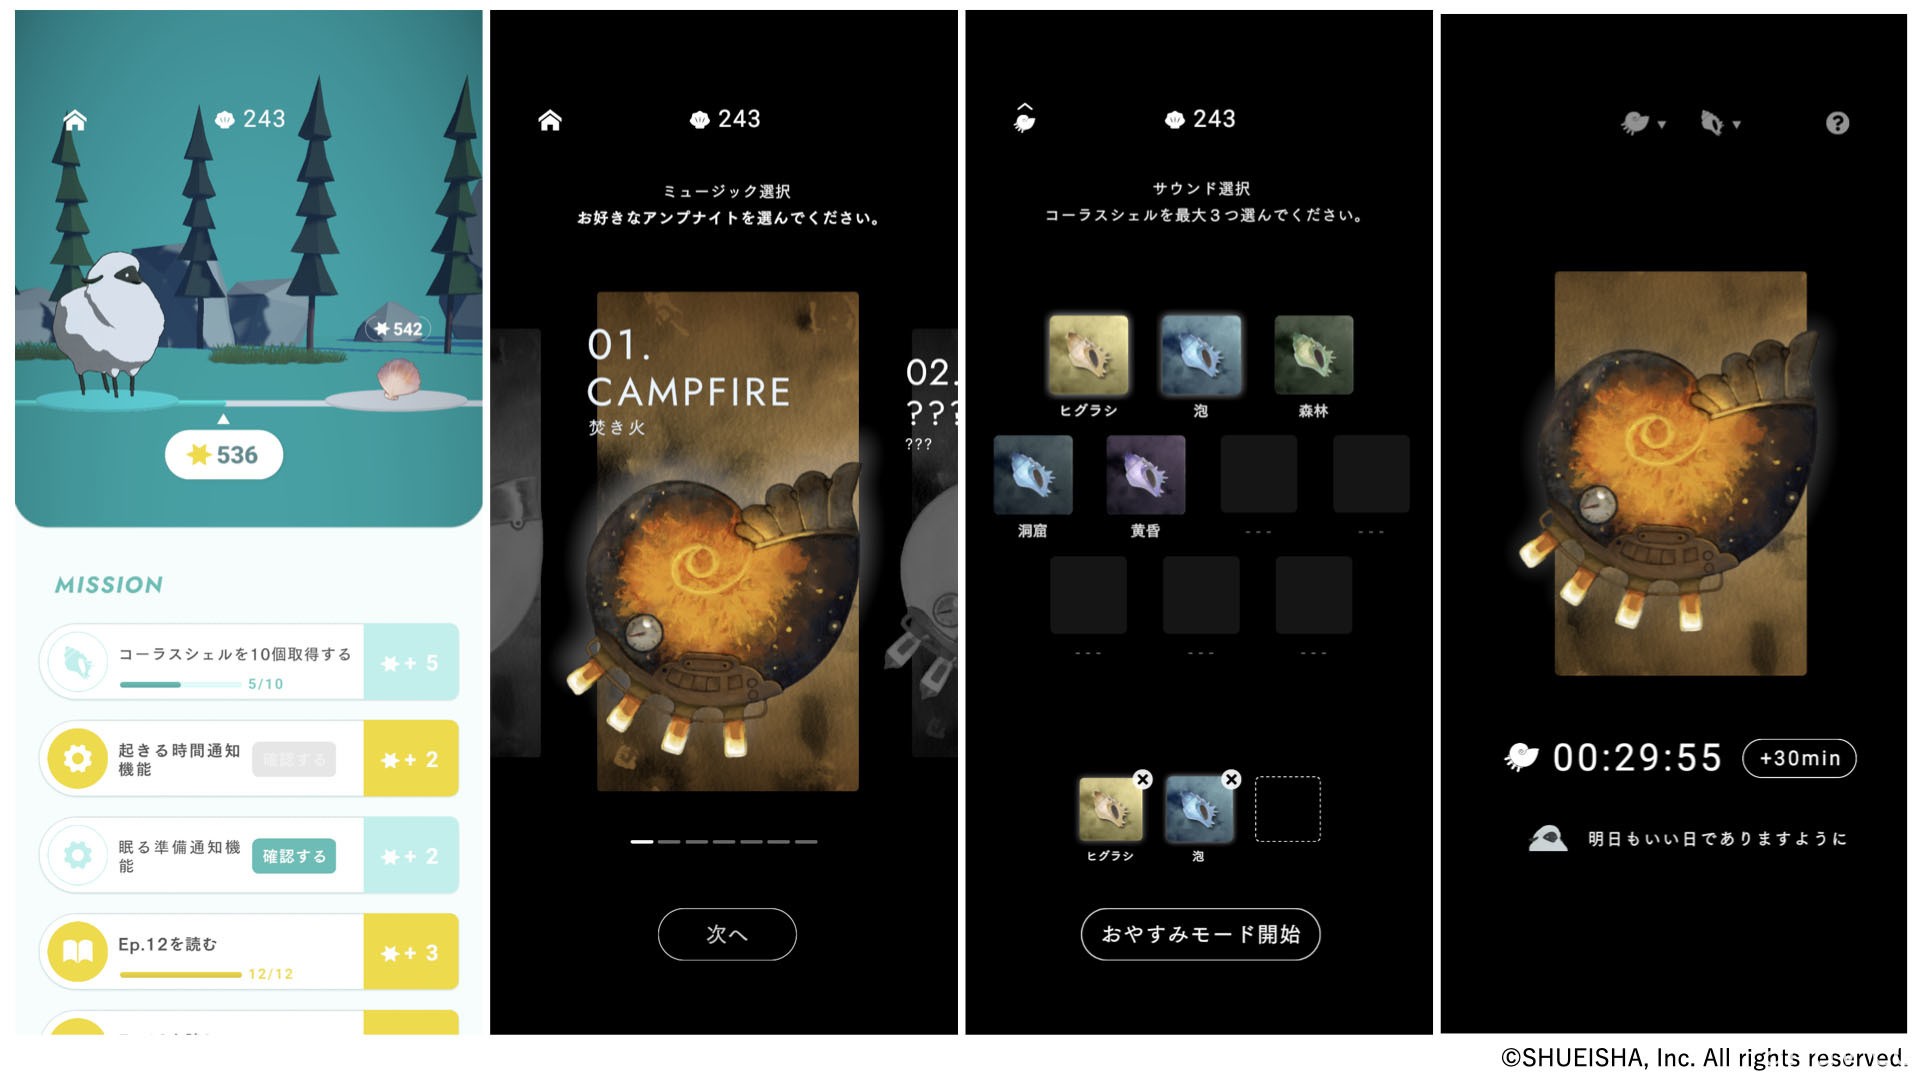 《夜羊之森》在日推出 入睡后能解锁全新故事的睡眠纪录 App